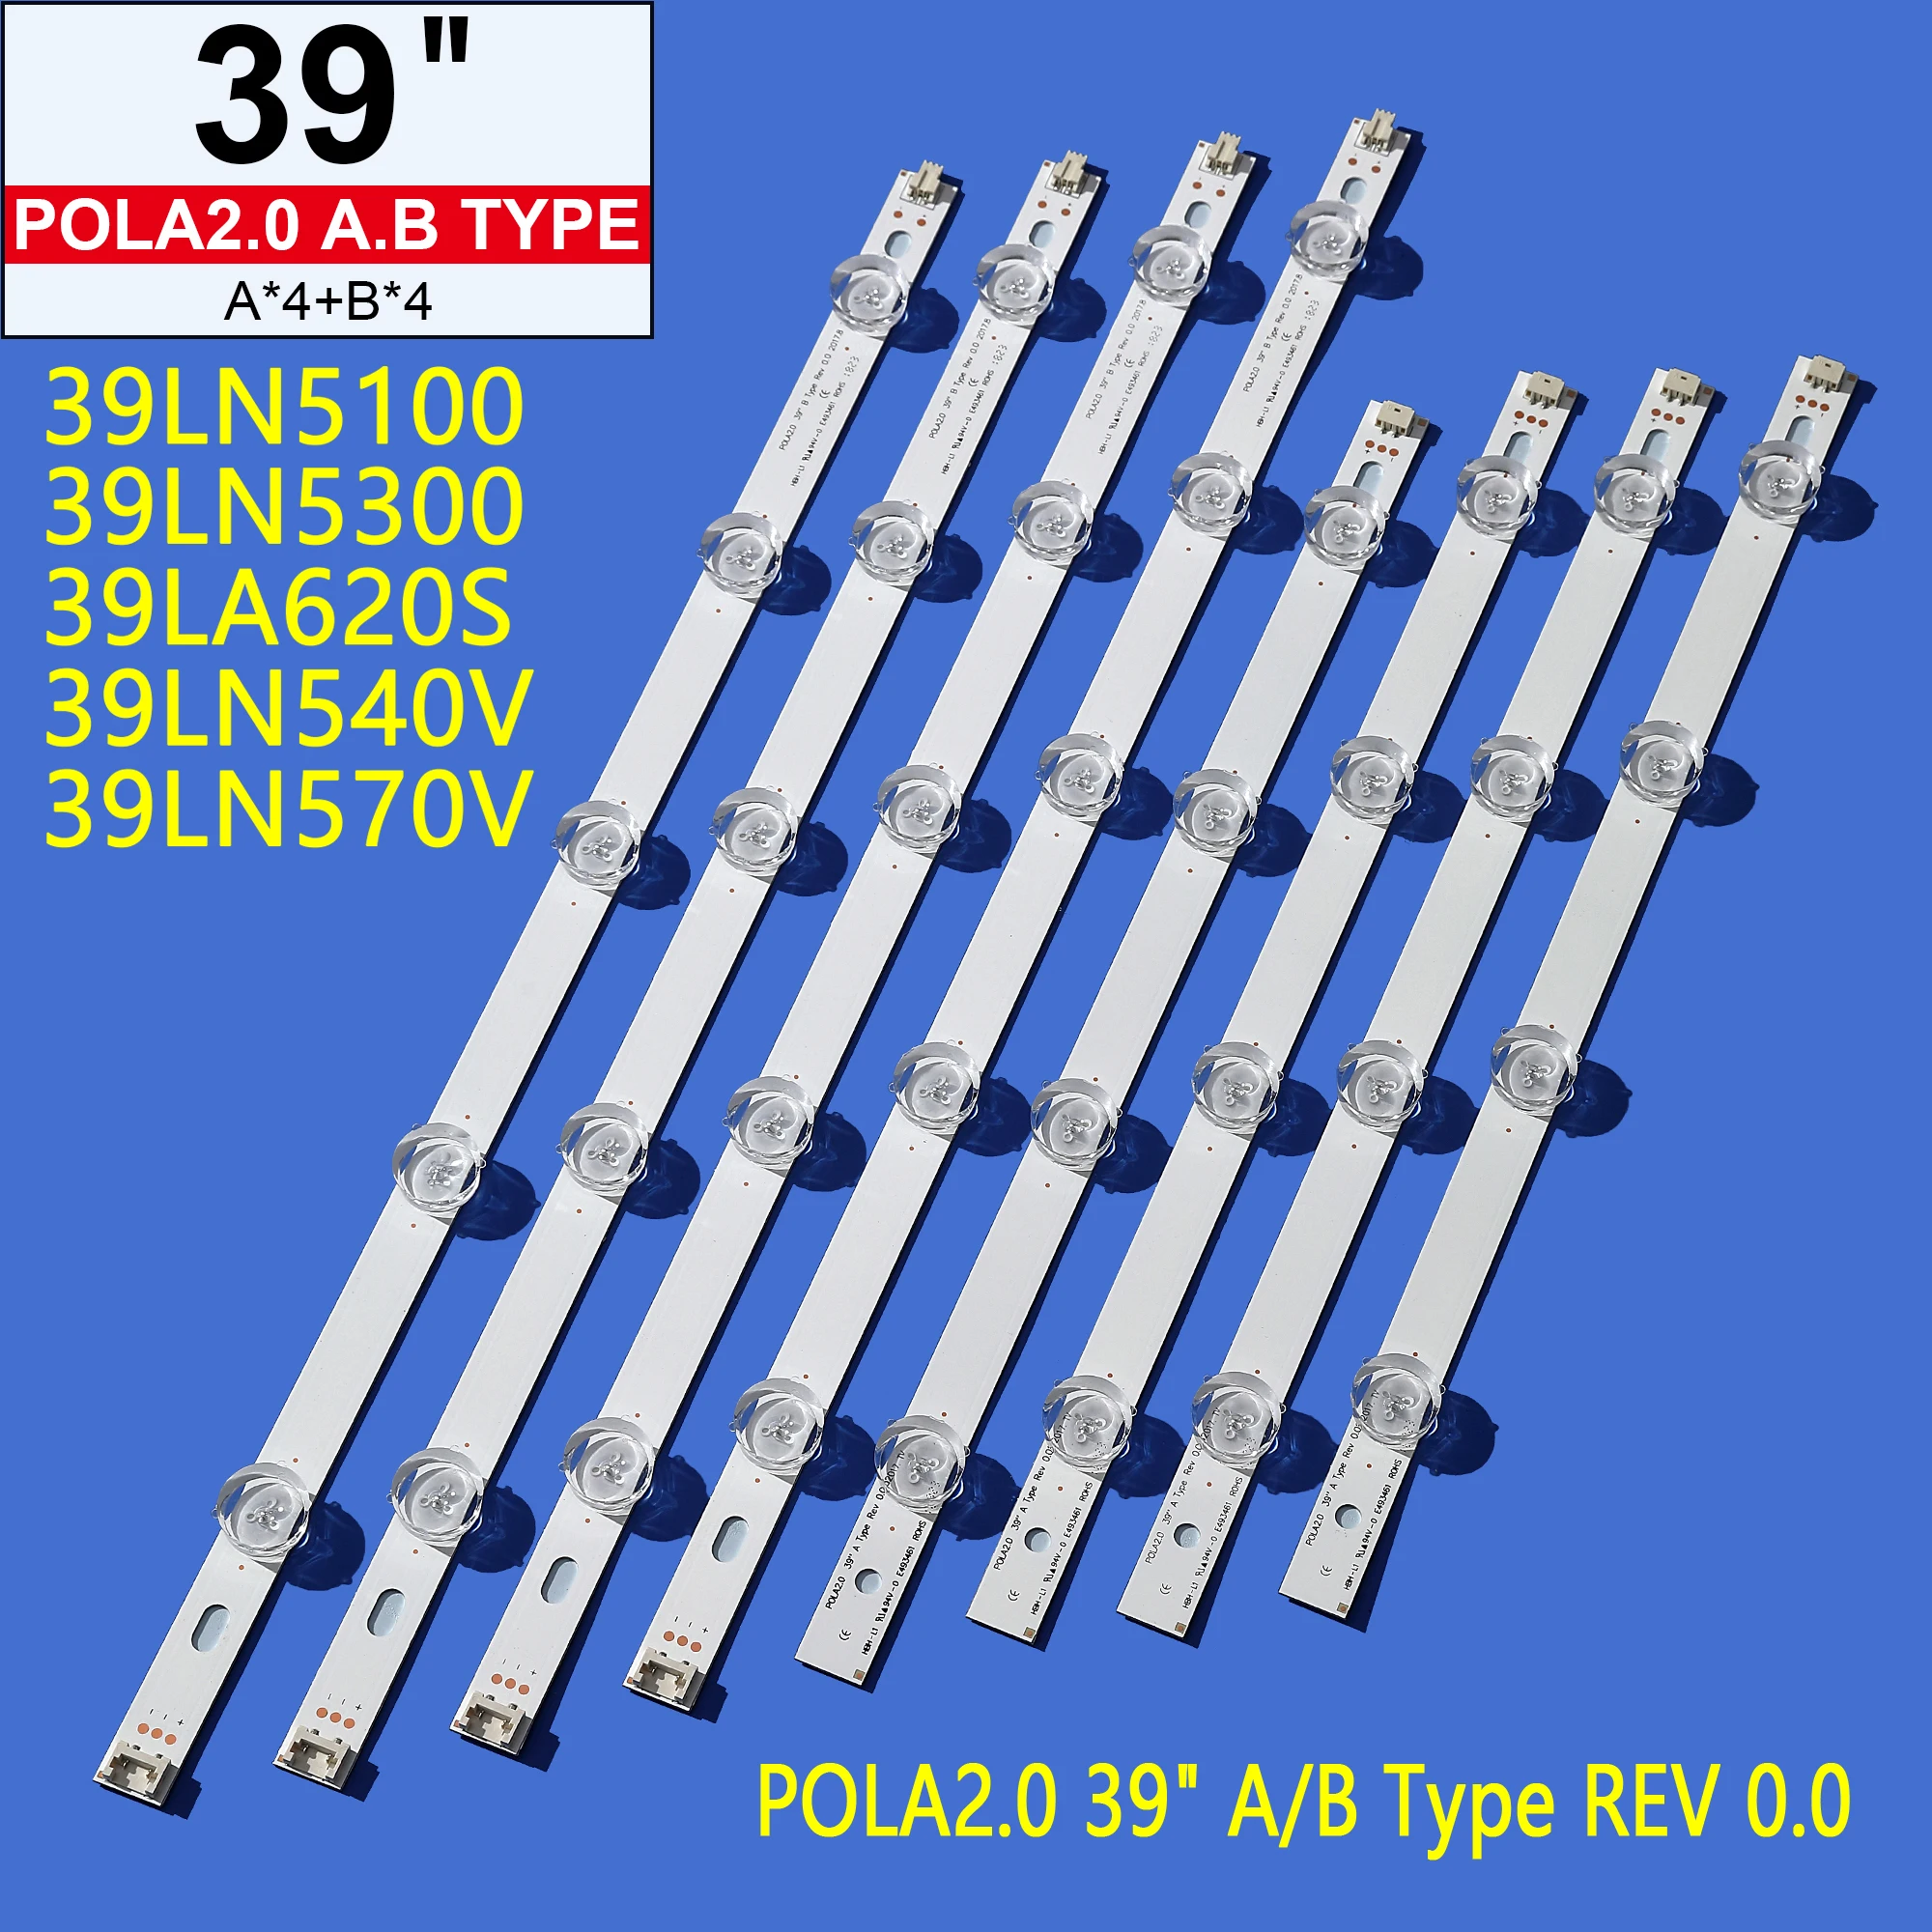 

LED strip for LG lnnotek POLA 2.0 39" A/B Type Rev 0.0 39LN5100 39LN5400 39LA6200 39LN5300 39LN540V 39LA620S HC390DUN-VCFP1